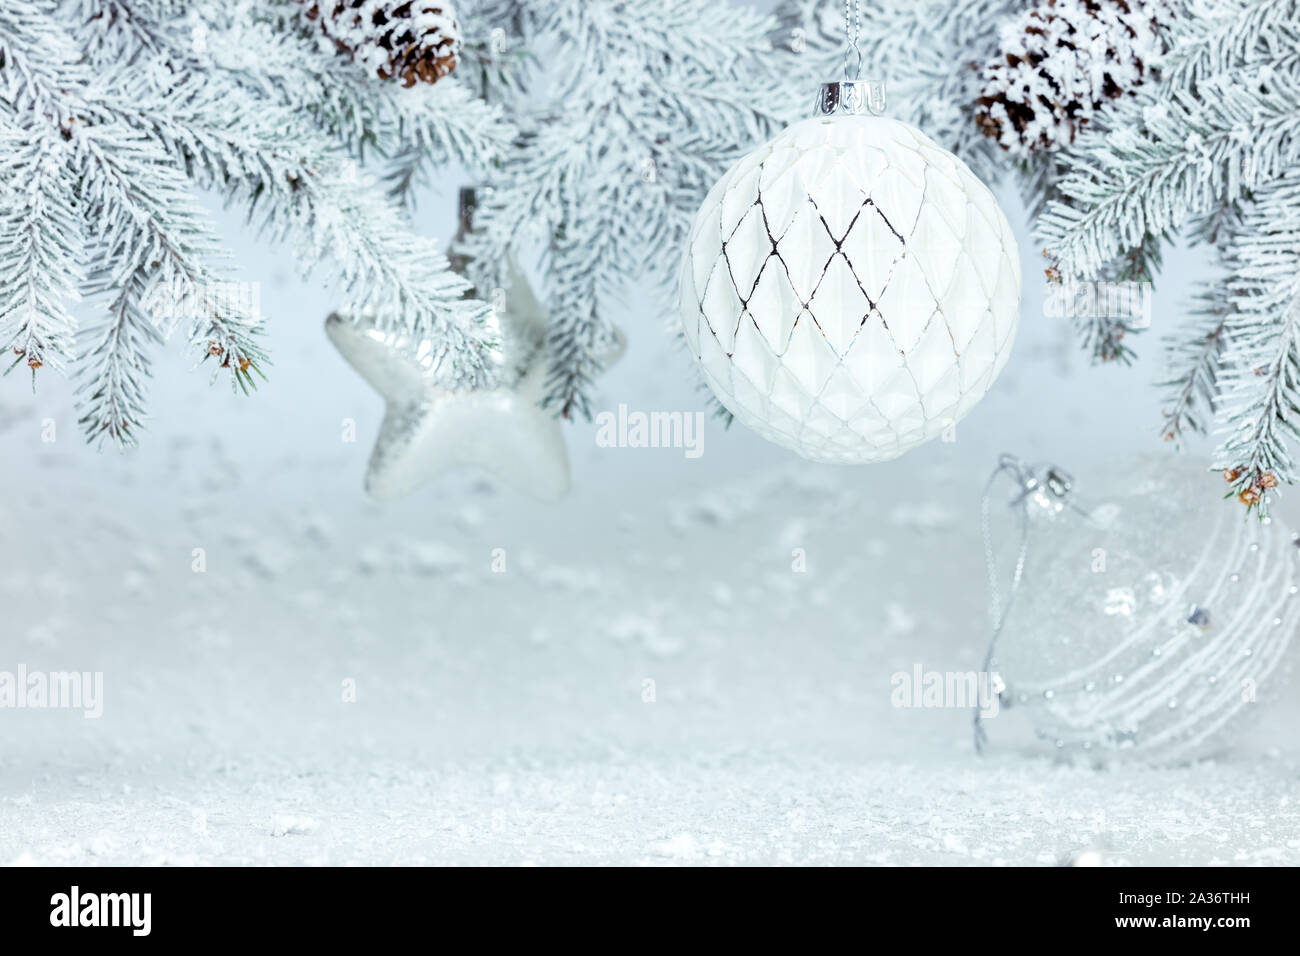 Festliche Winter neues Jahr Hintergrund mit schneebedeckten Tannenbaum Zweig mit Glaskugeln und Sternen verziert Stockfoto